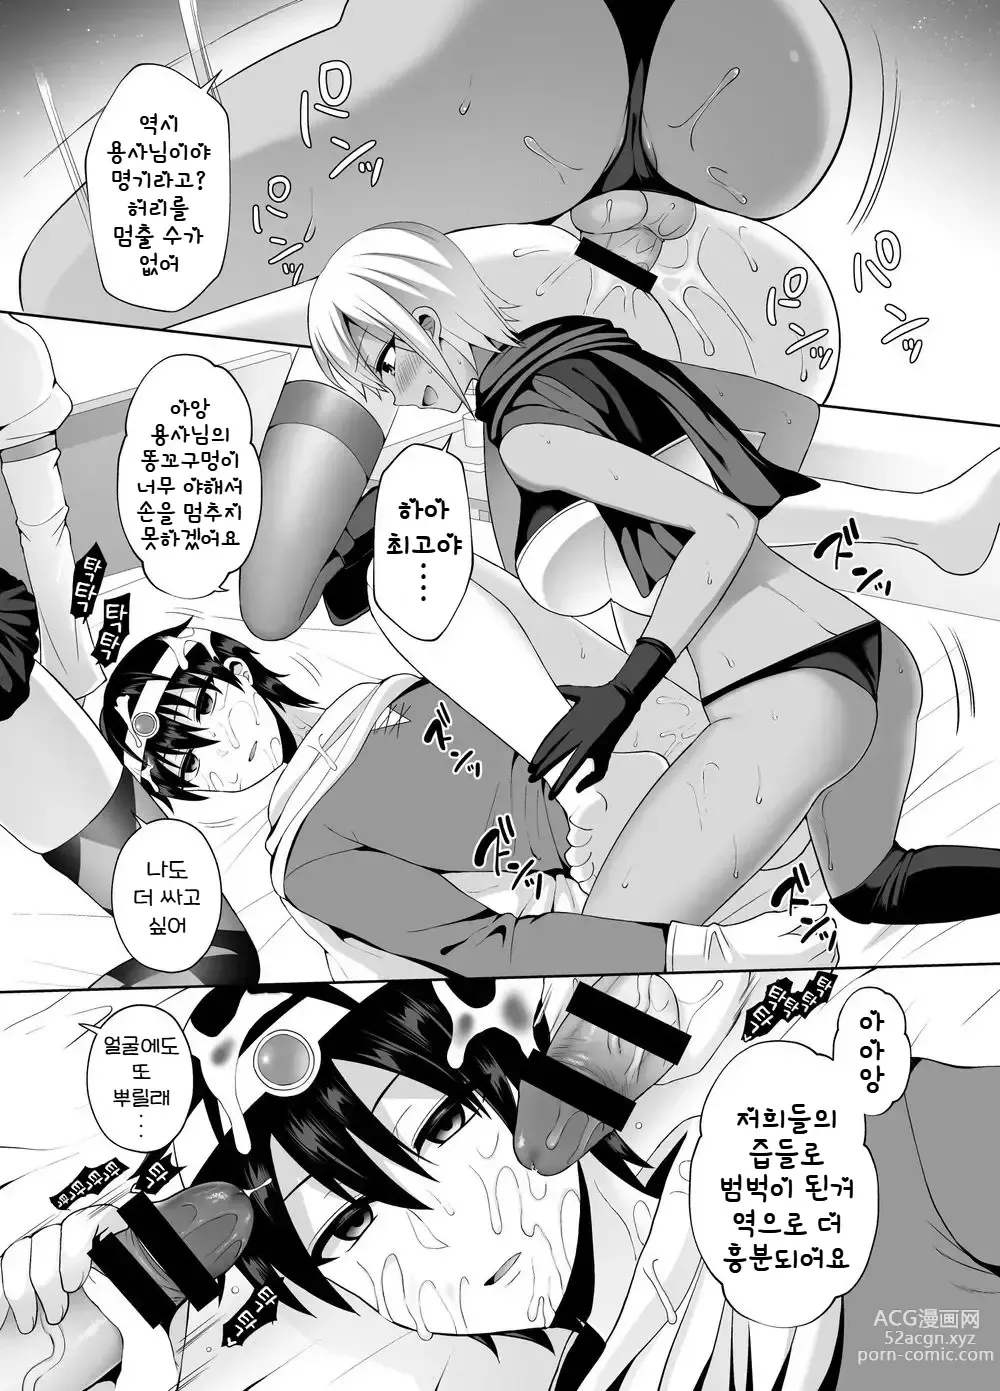 Page 22 of doujinshi 최강의 용사이지만 동료에게 무력화되어 겁탈당했습니다